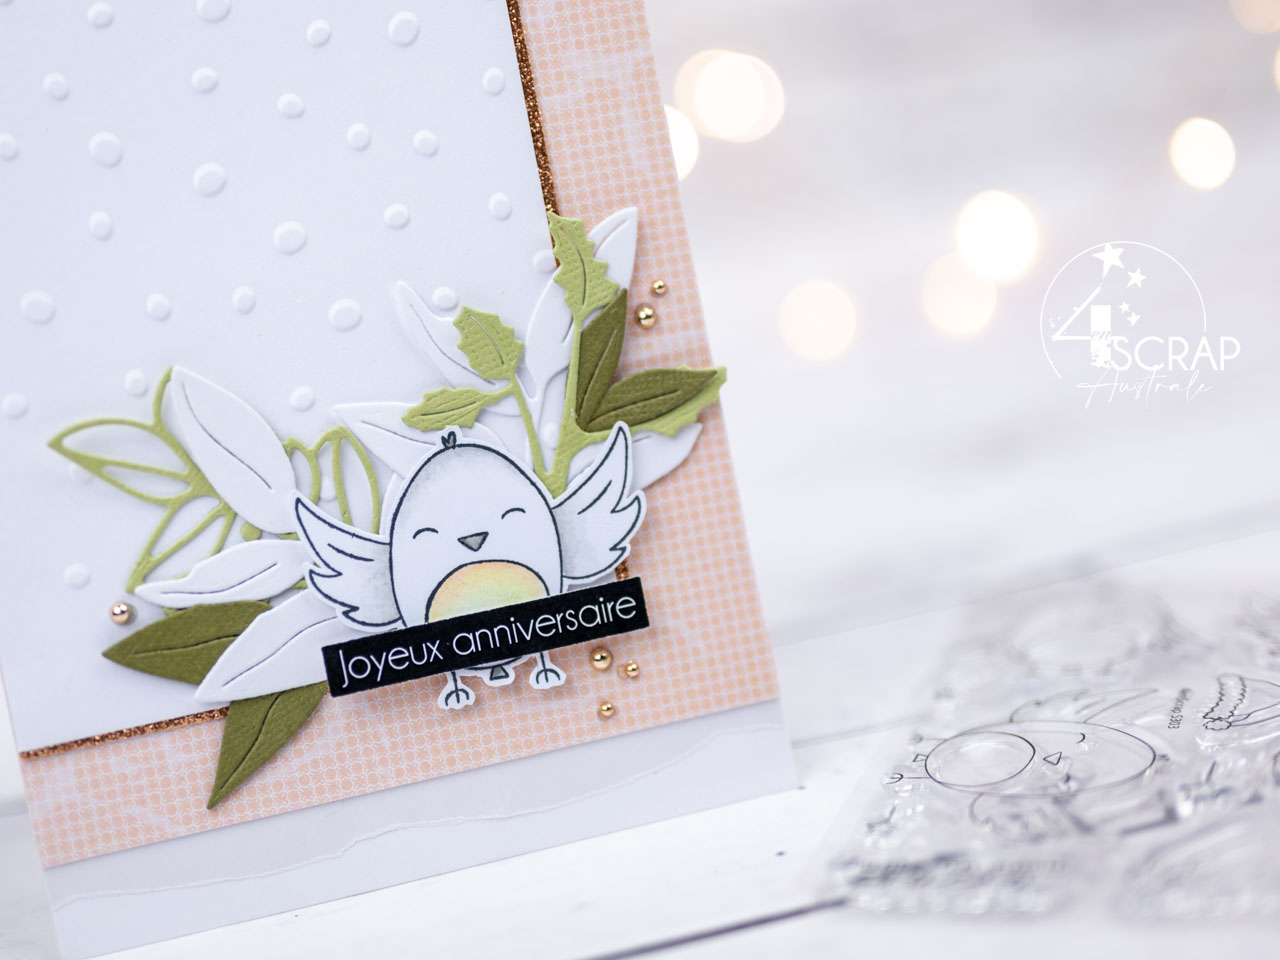 Création d'un ensemble cadeau pour anniversaire avec carte et étiquettes et les petits oiseaux d'hiver et feuillages de la collection Noël 2021 de 4enscrap.